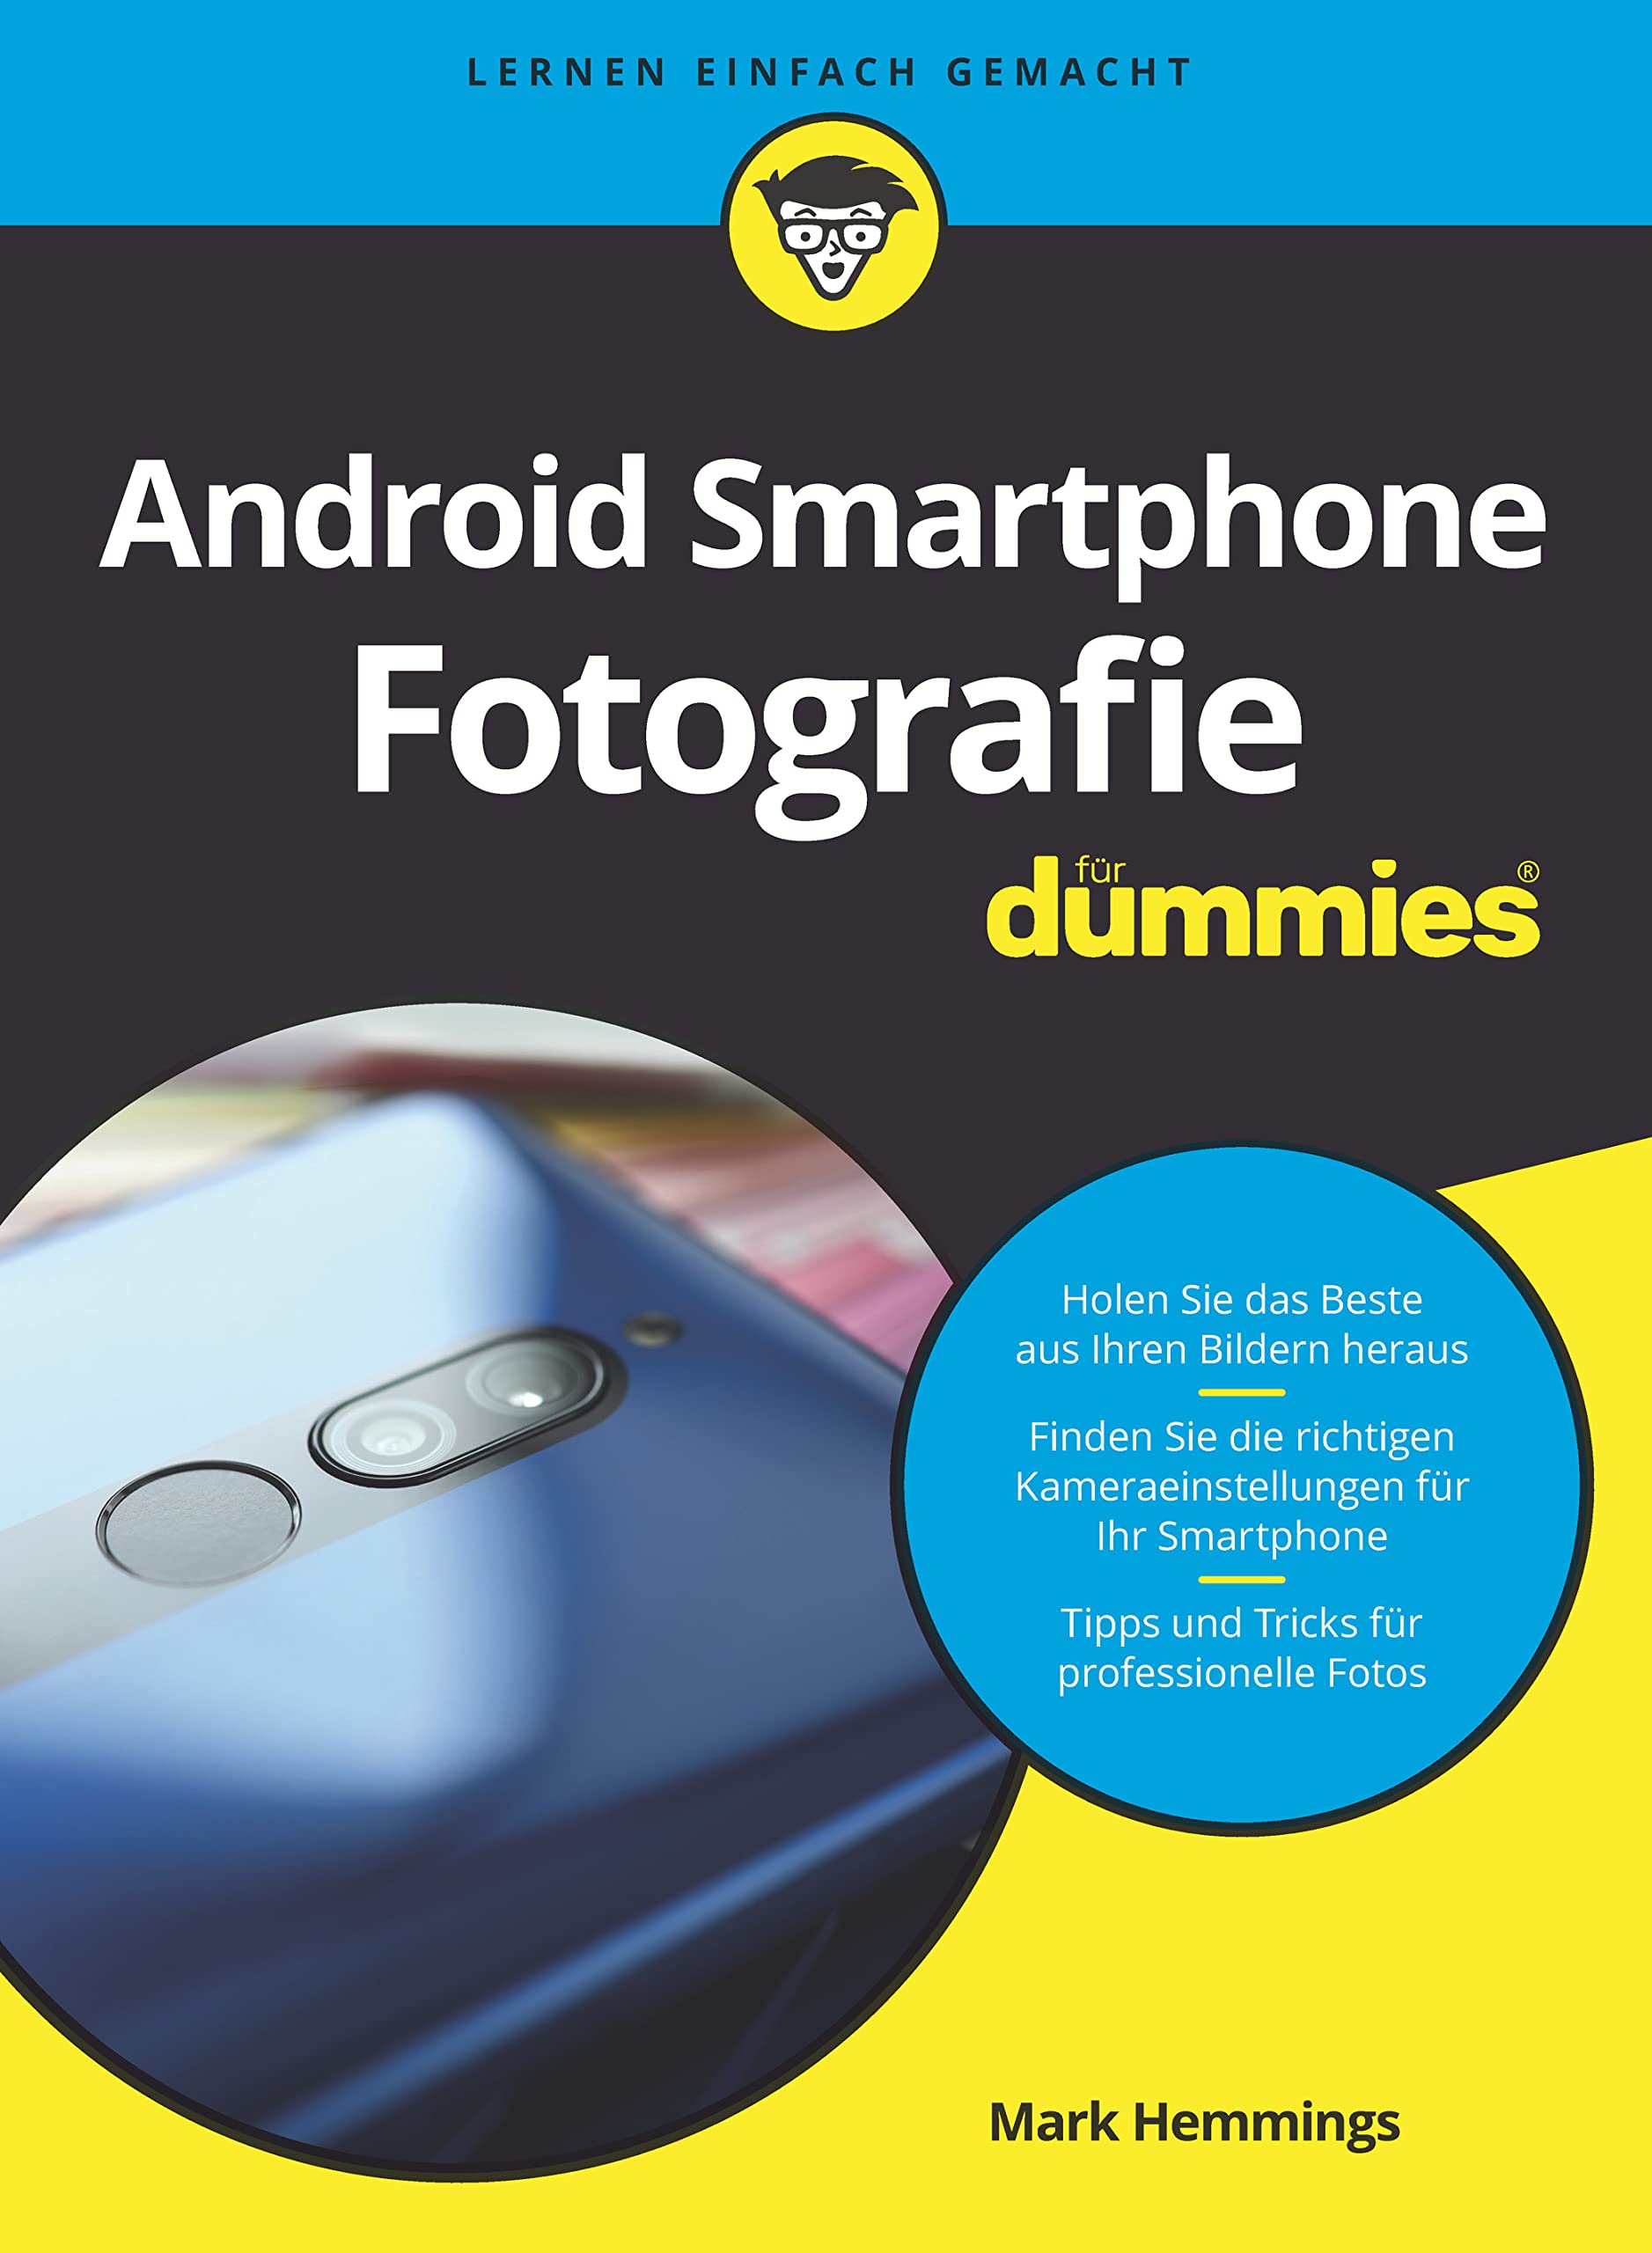 Android-Smartphone-Fotografie für Dummies von Mark Hemmings und Judith Muhr